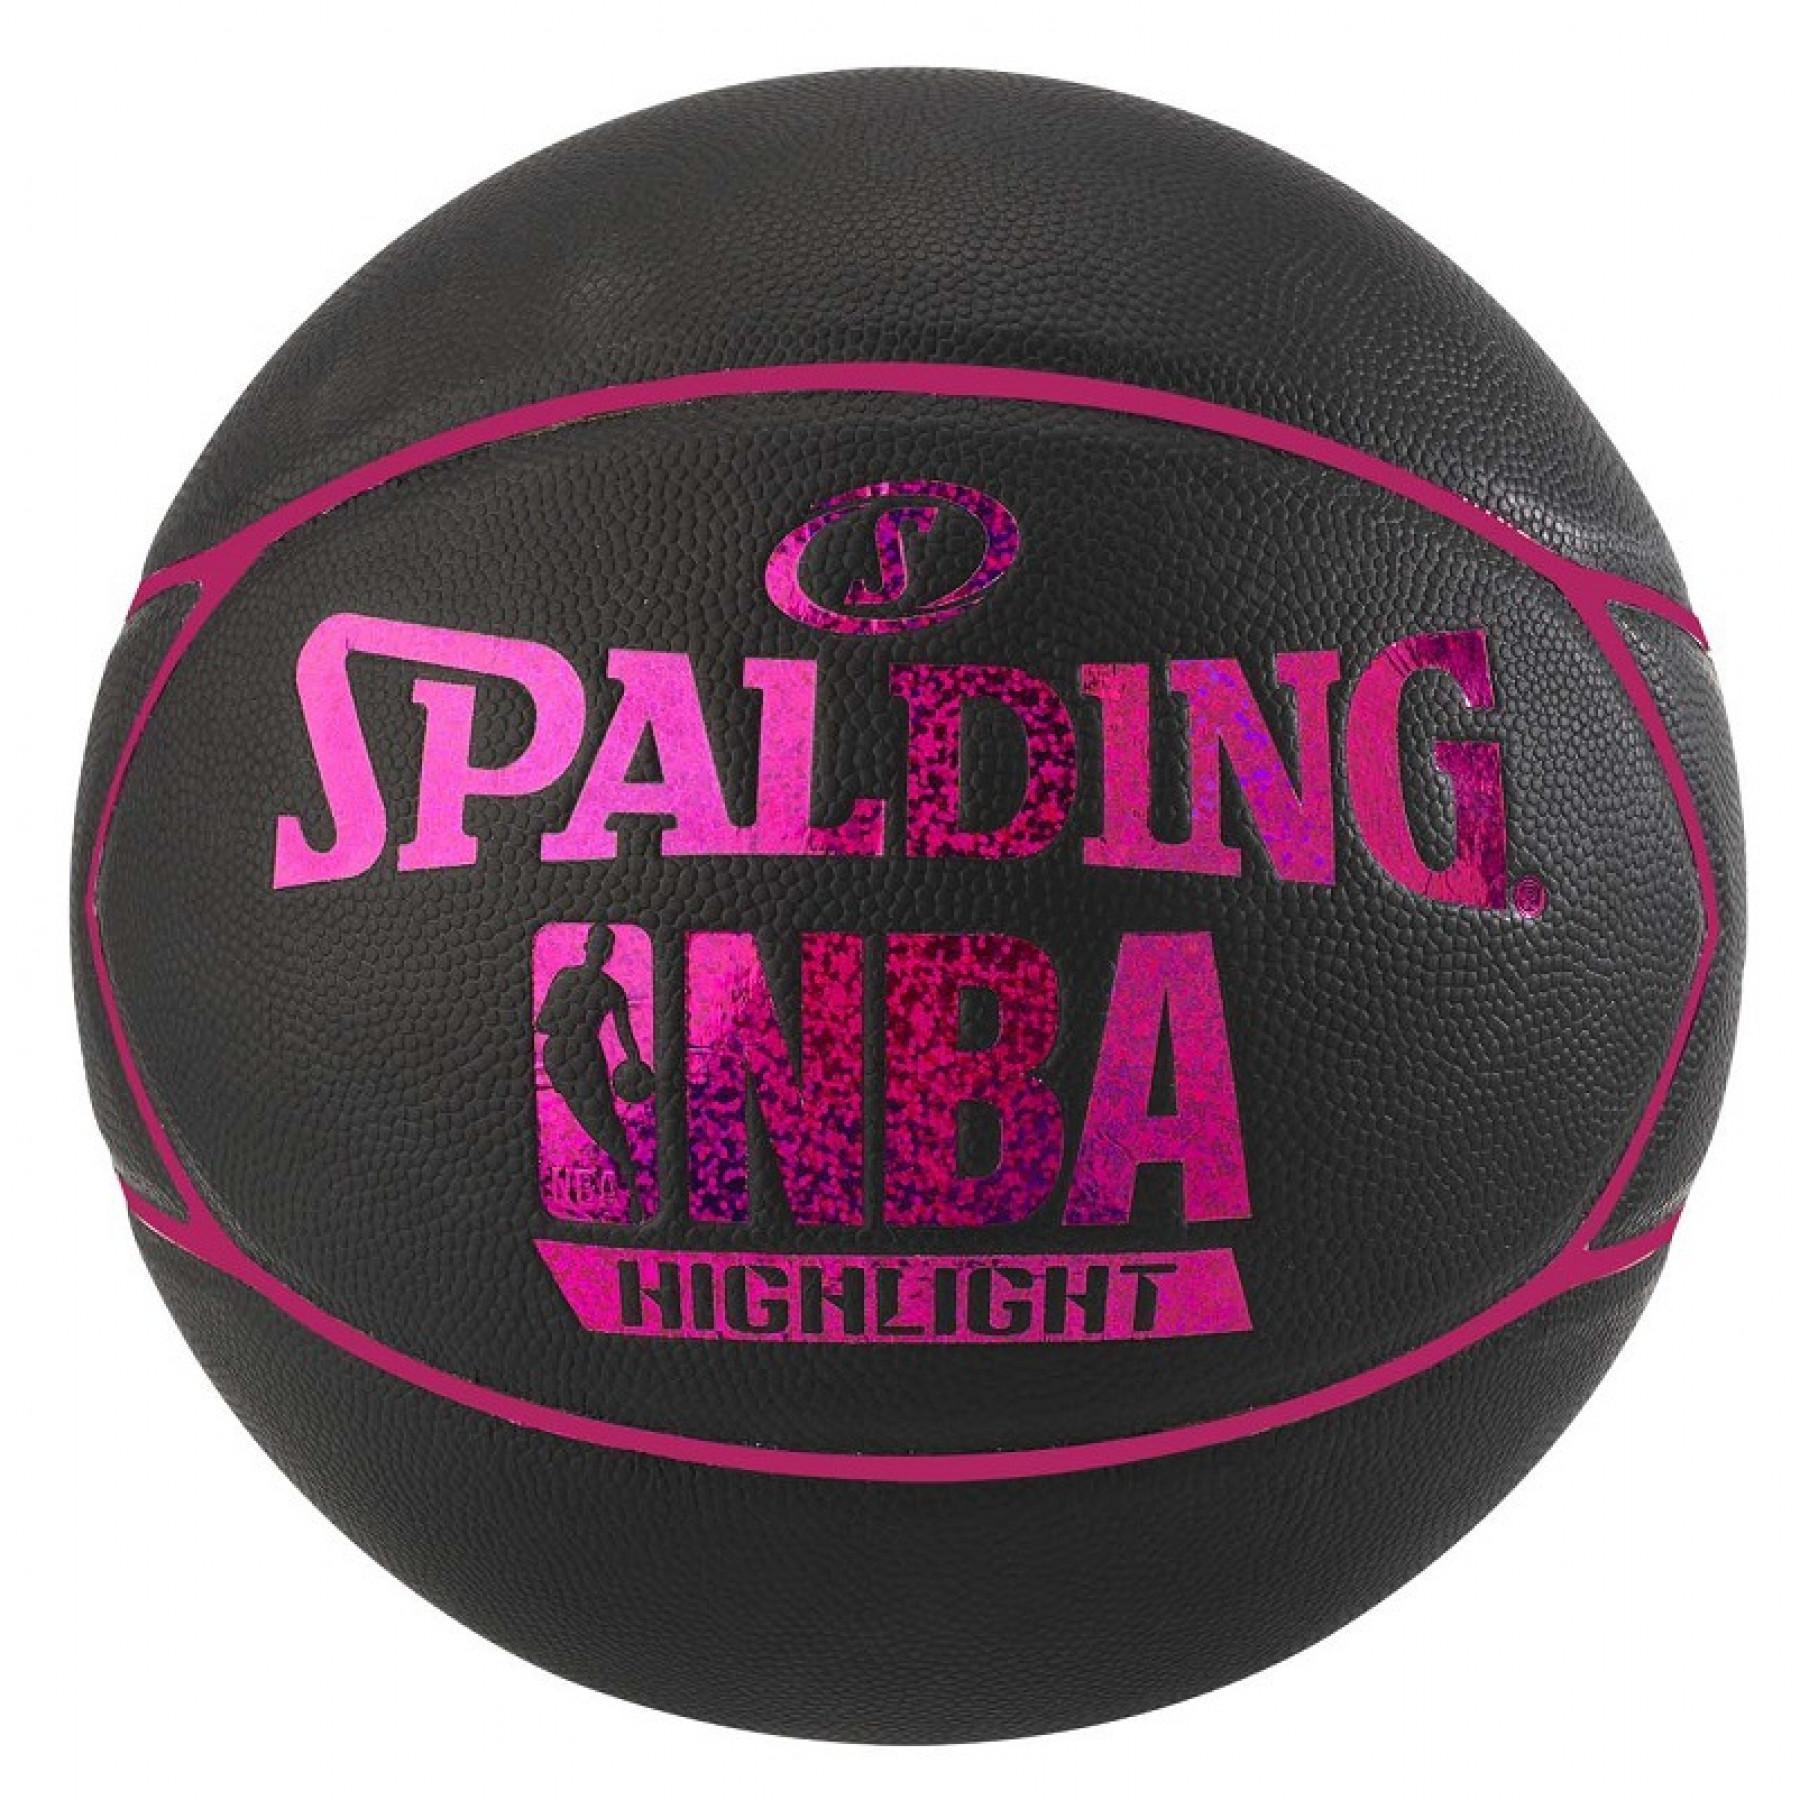 Balon damski Spalding NBA Highlight 4her